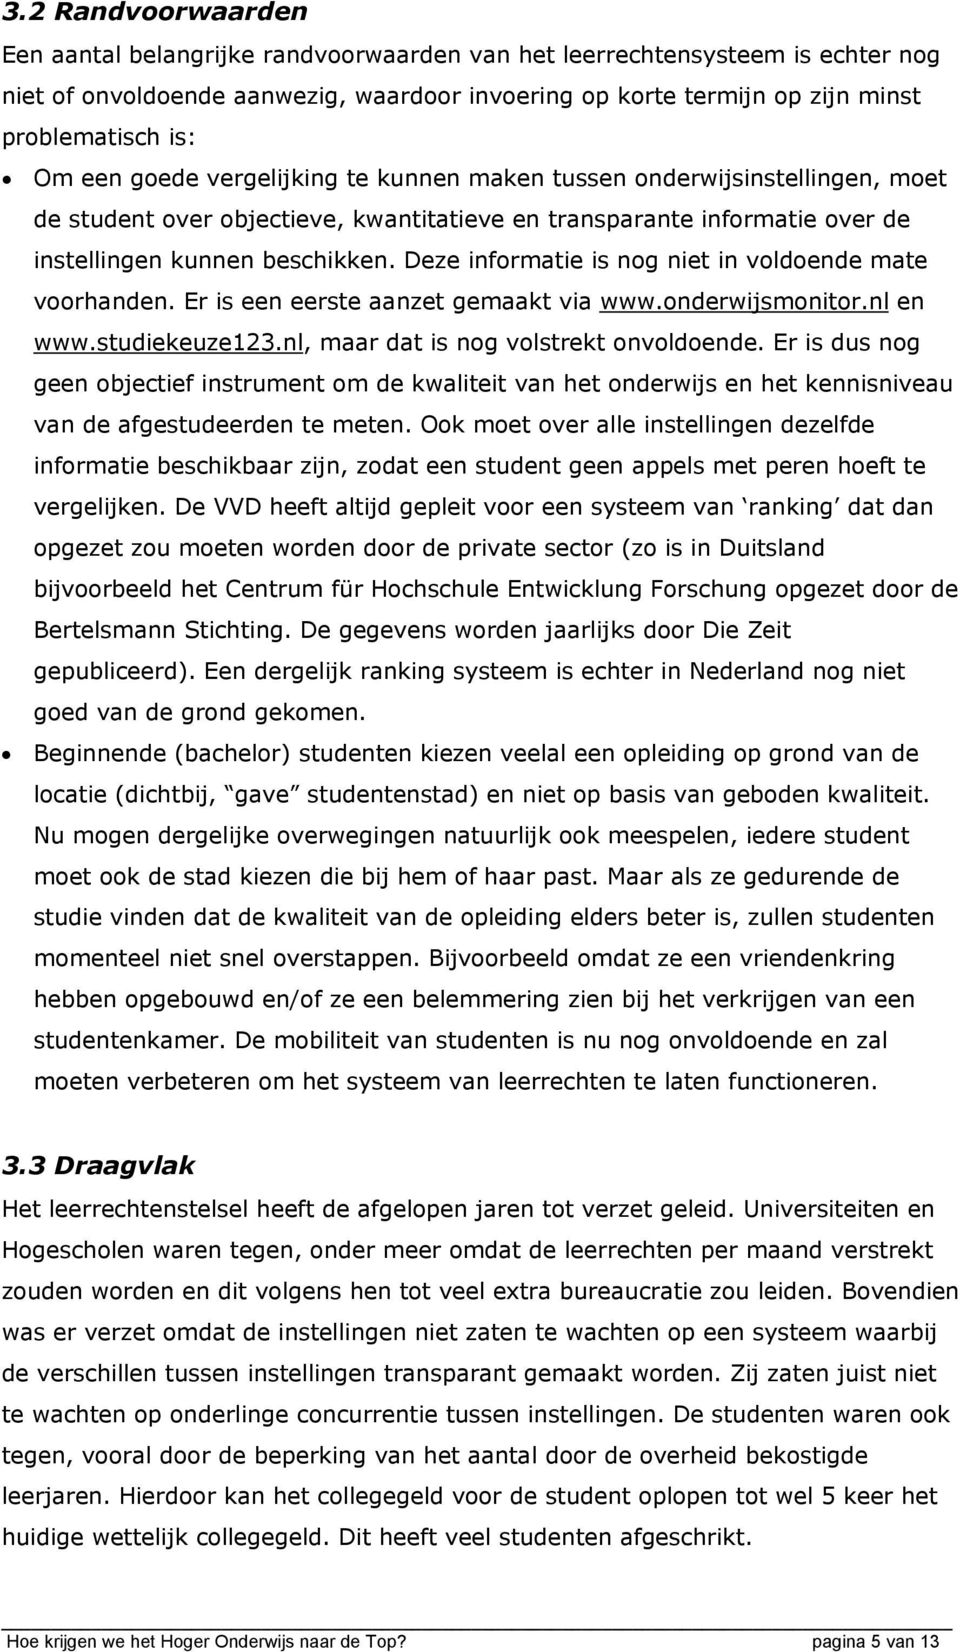 Deze informatie is nog niet in voldoende mate voorhanden. Er is een eerste aanzet gemaakt via www.onderwijsmonitor.nl en www.studiekeuze123.nl, maar dat is nog volstrekt onvoldoende.